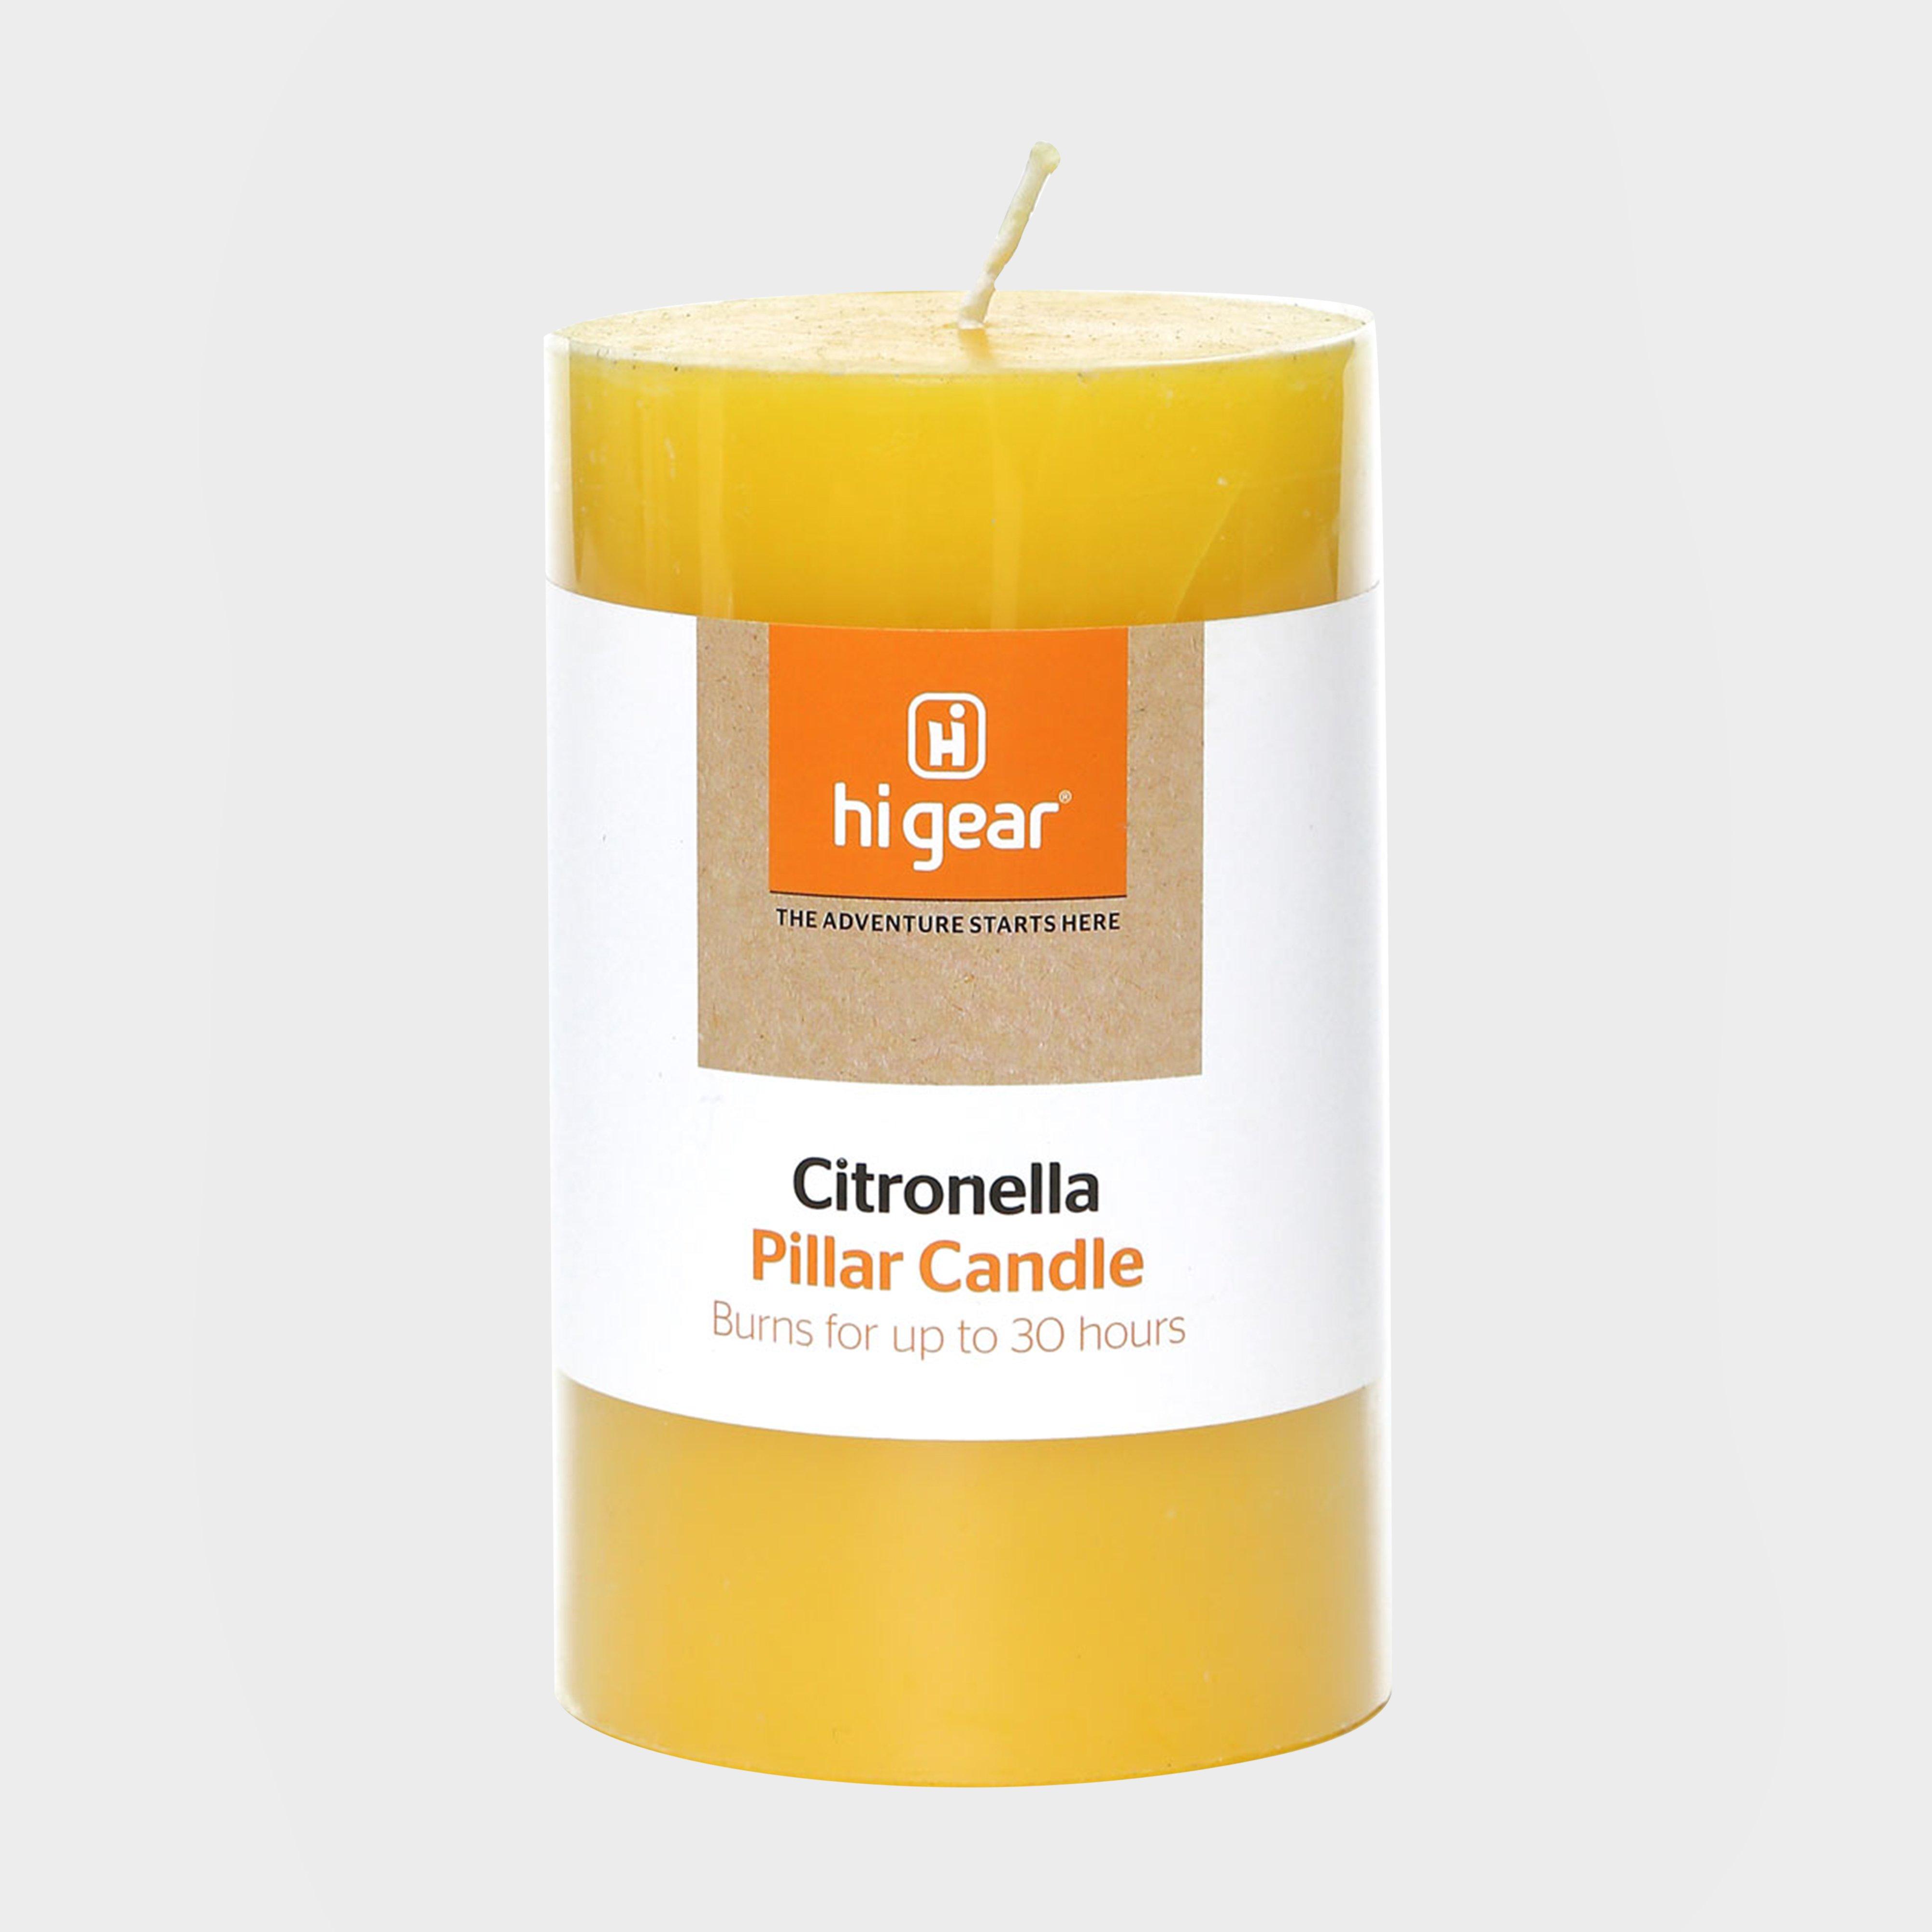 Hi-gear Citronella Pillar Candle - Orange/white  Orange/white